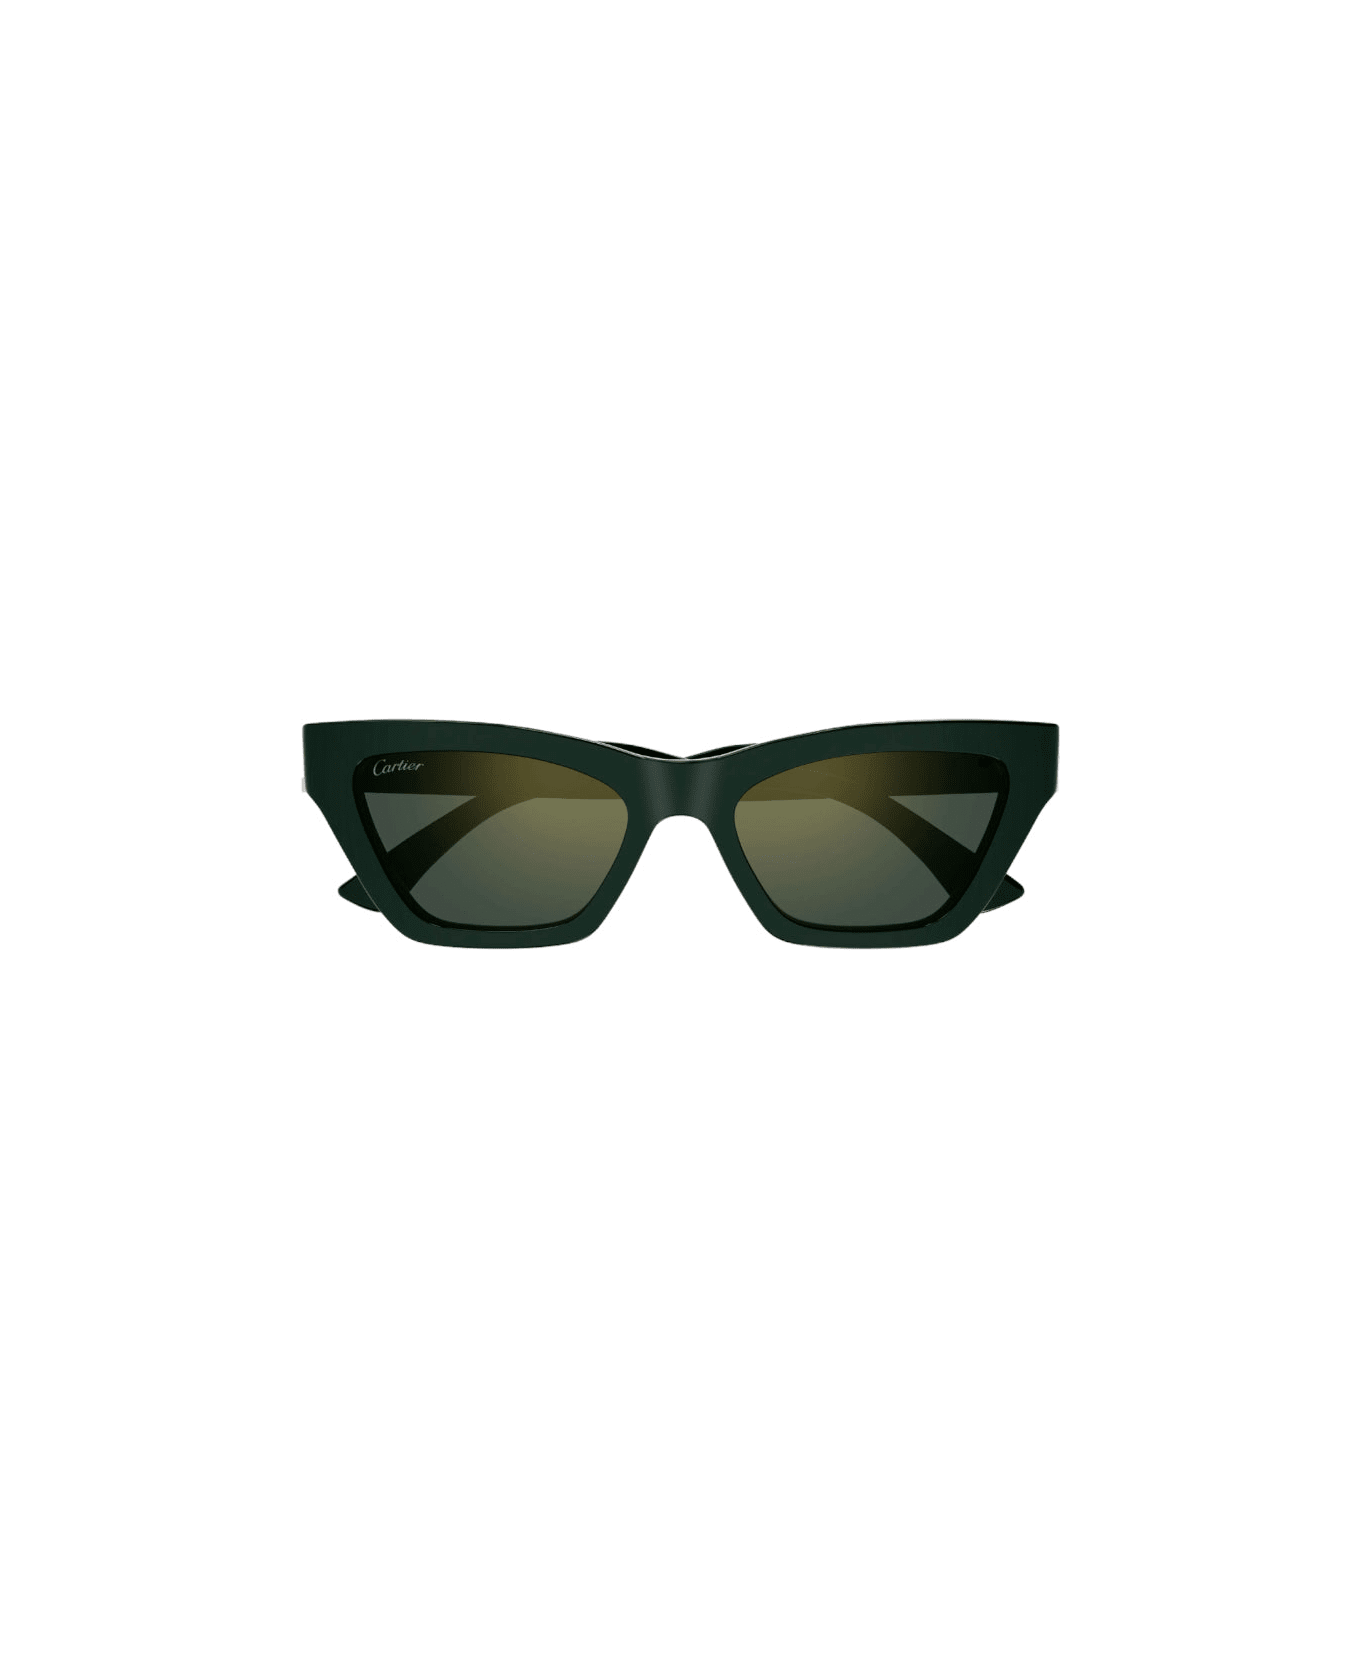 Cartier Eyewear Ct 0437 Sunglasses サングラス